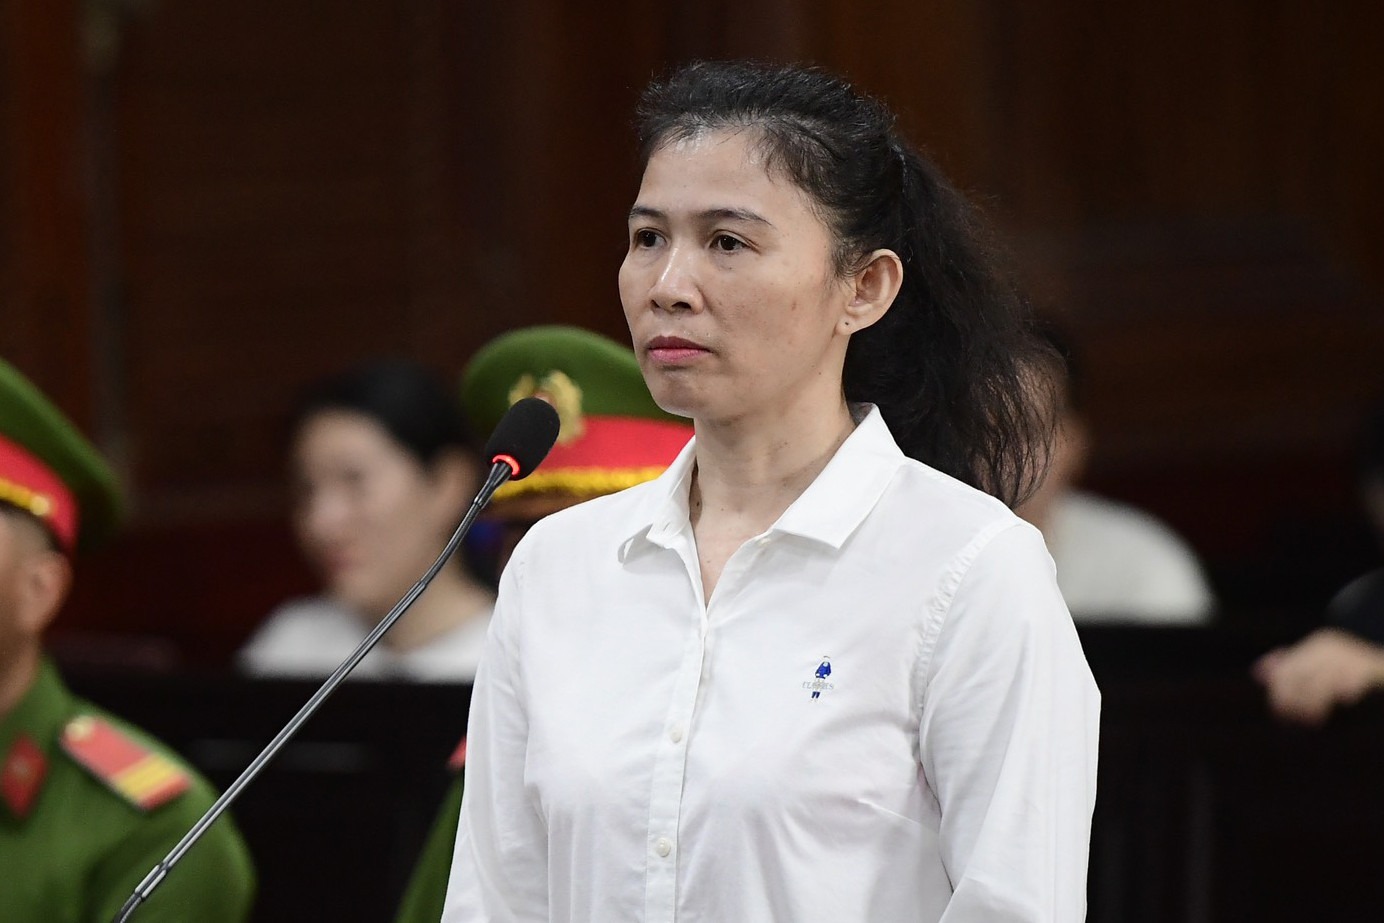 An ninh - Hình sự - Bà Hàn Ni chấp nhận hình phạt 18 tháng tù, ông Trần Văn Sỹ kháng cáo